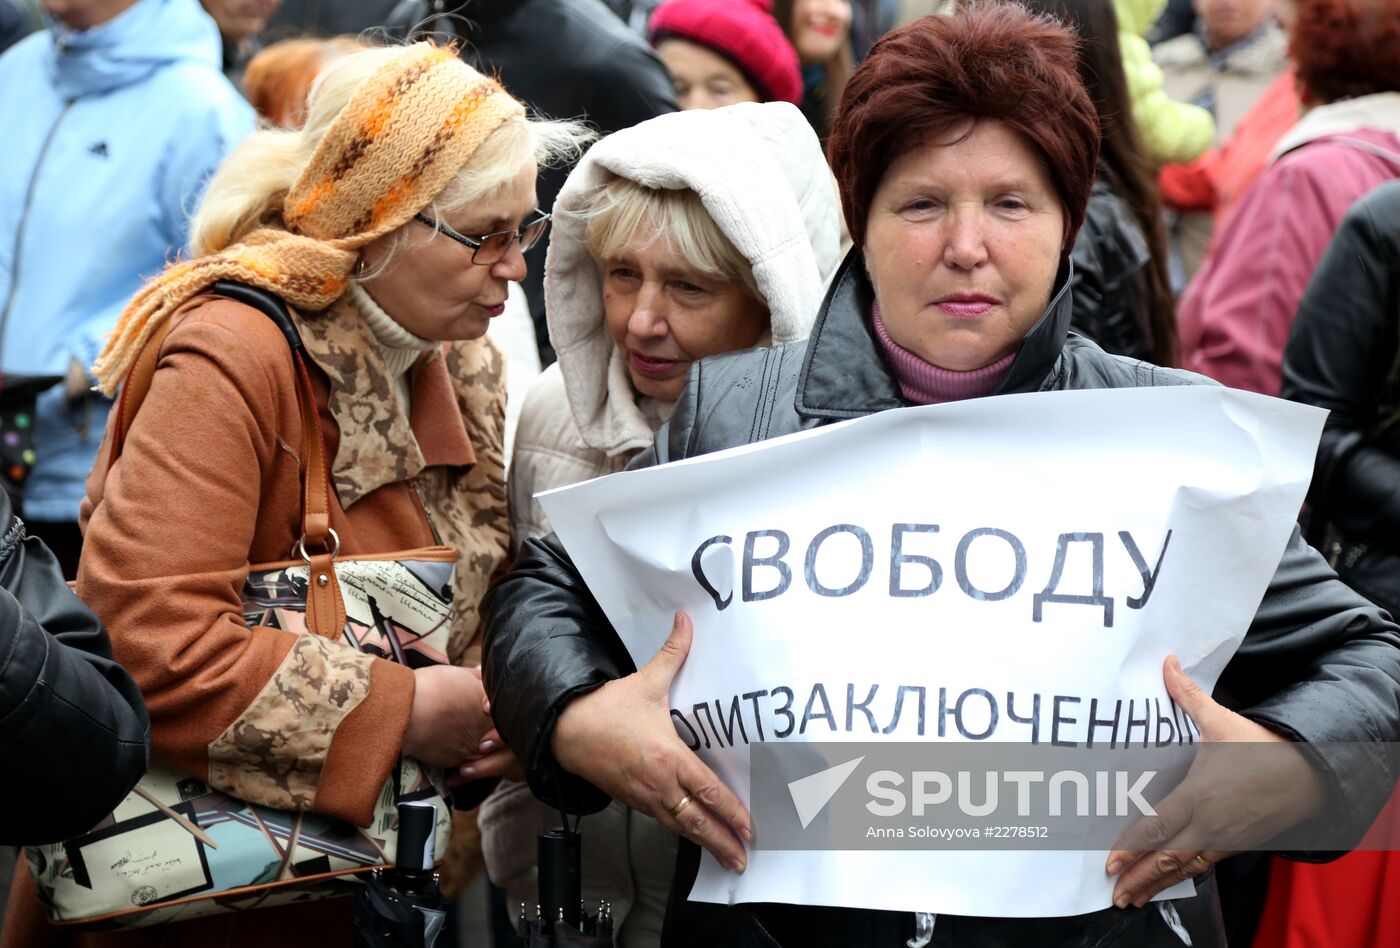 Rally in support of Evgeny Urlashov